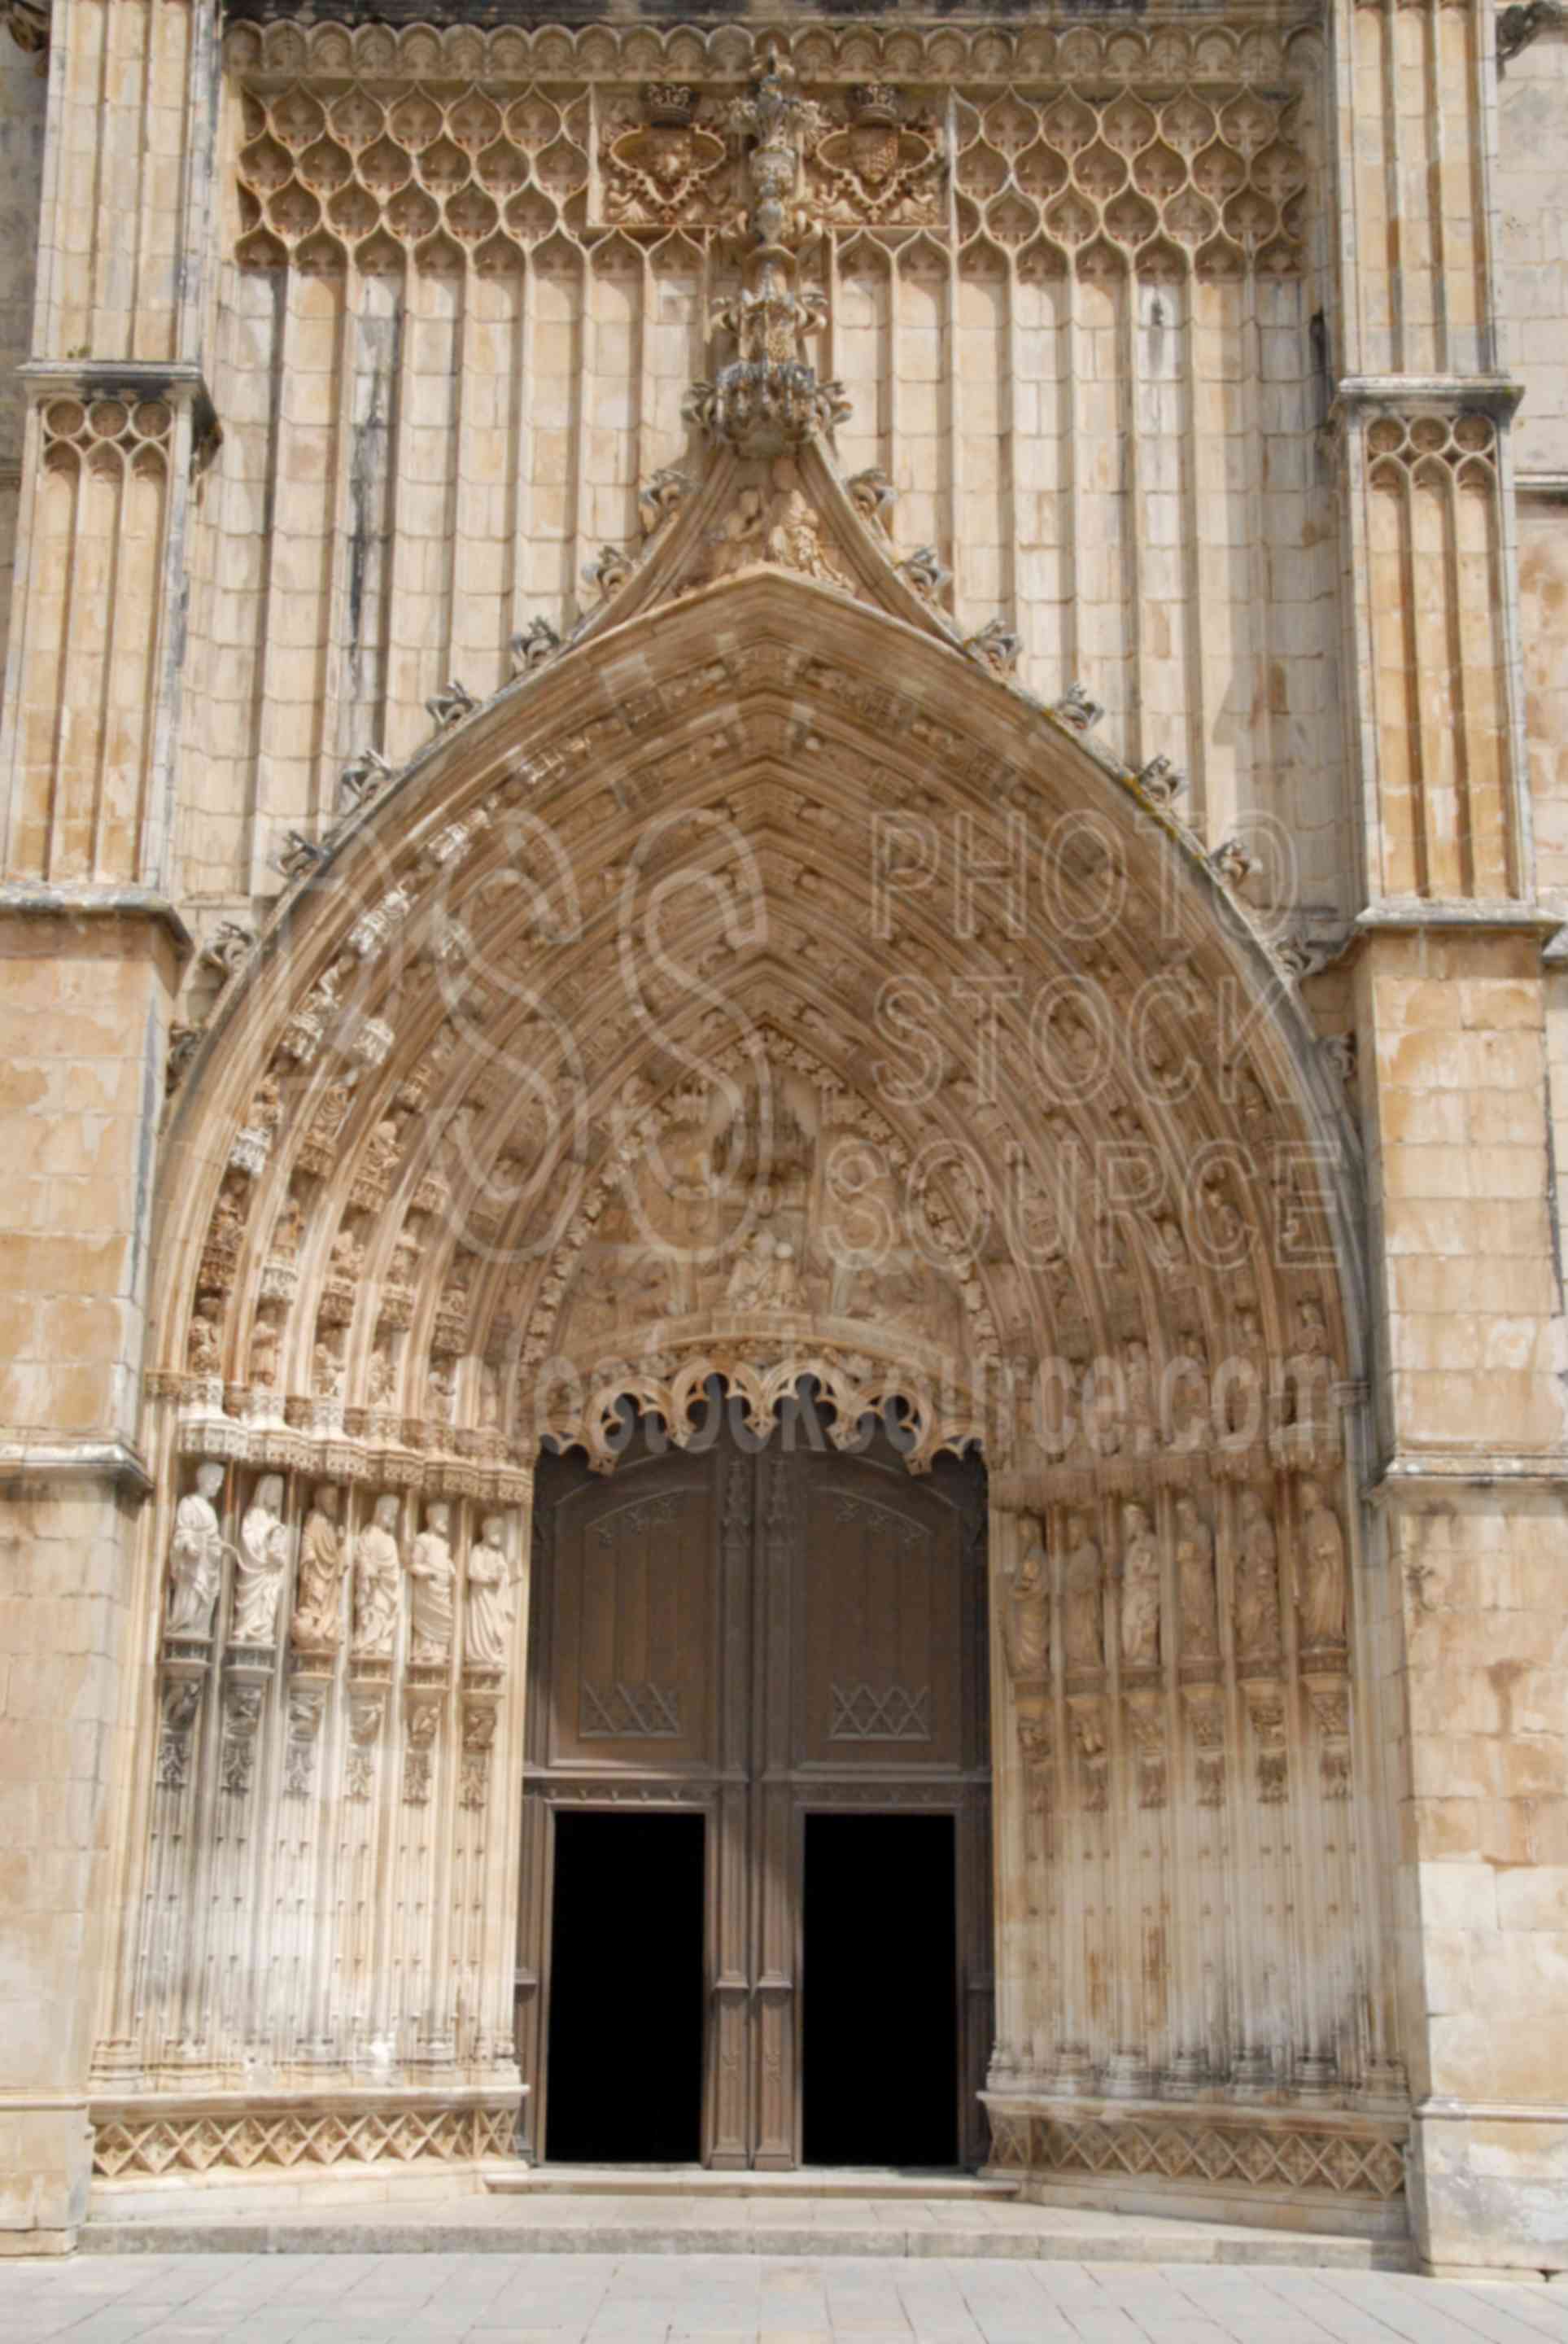 Cathedral Entrance,mosterio de santa maria da vitoria,cathedral,portugal churches,religion